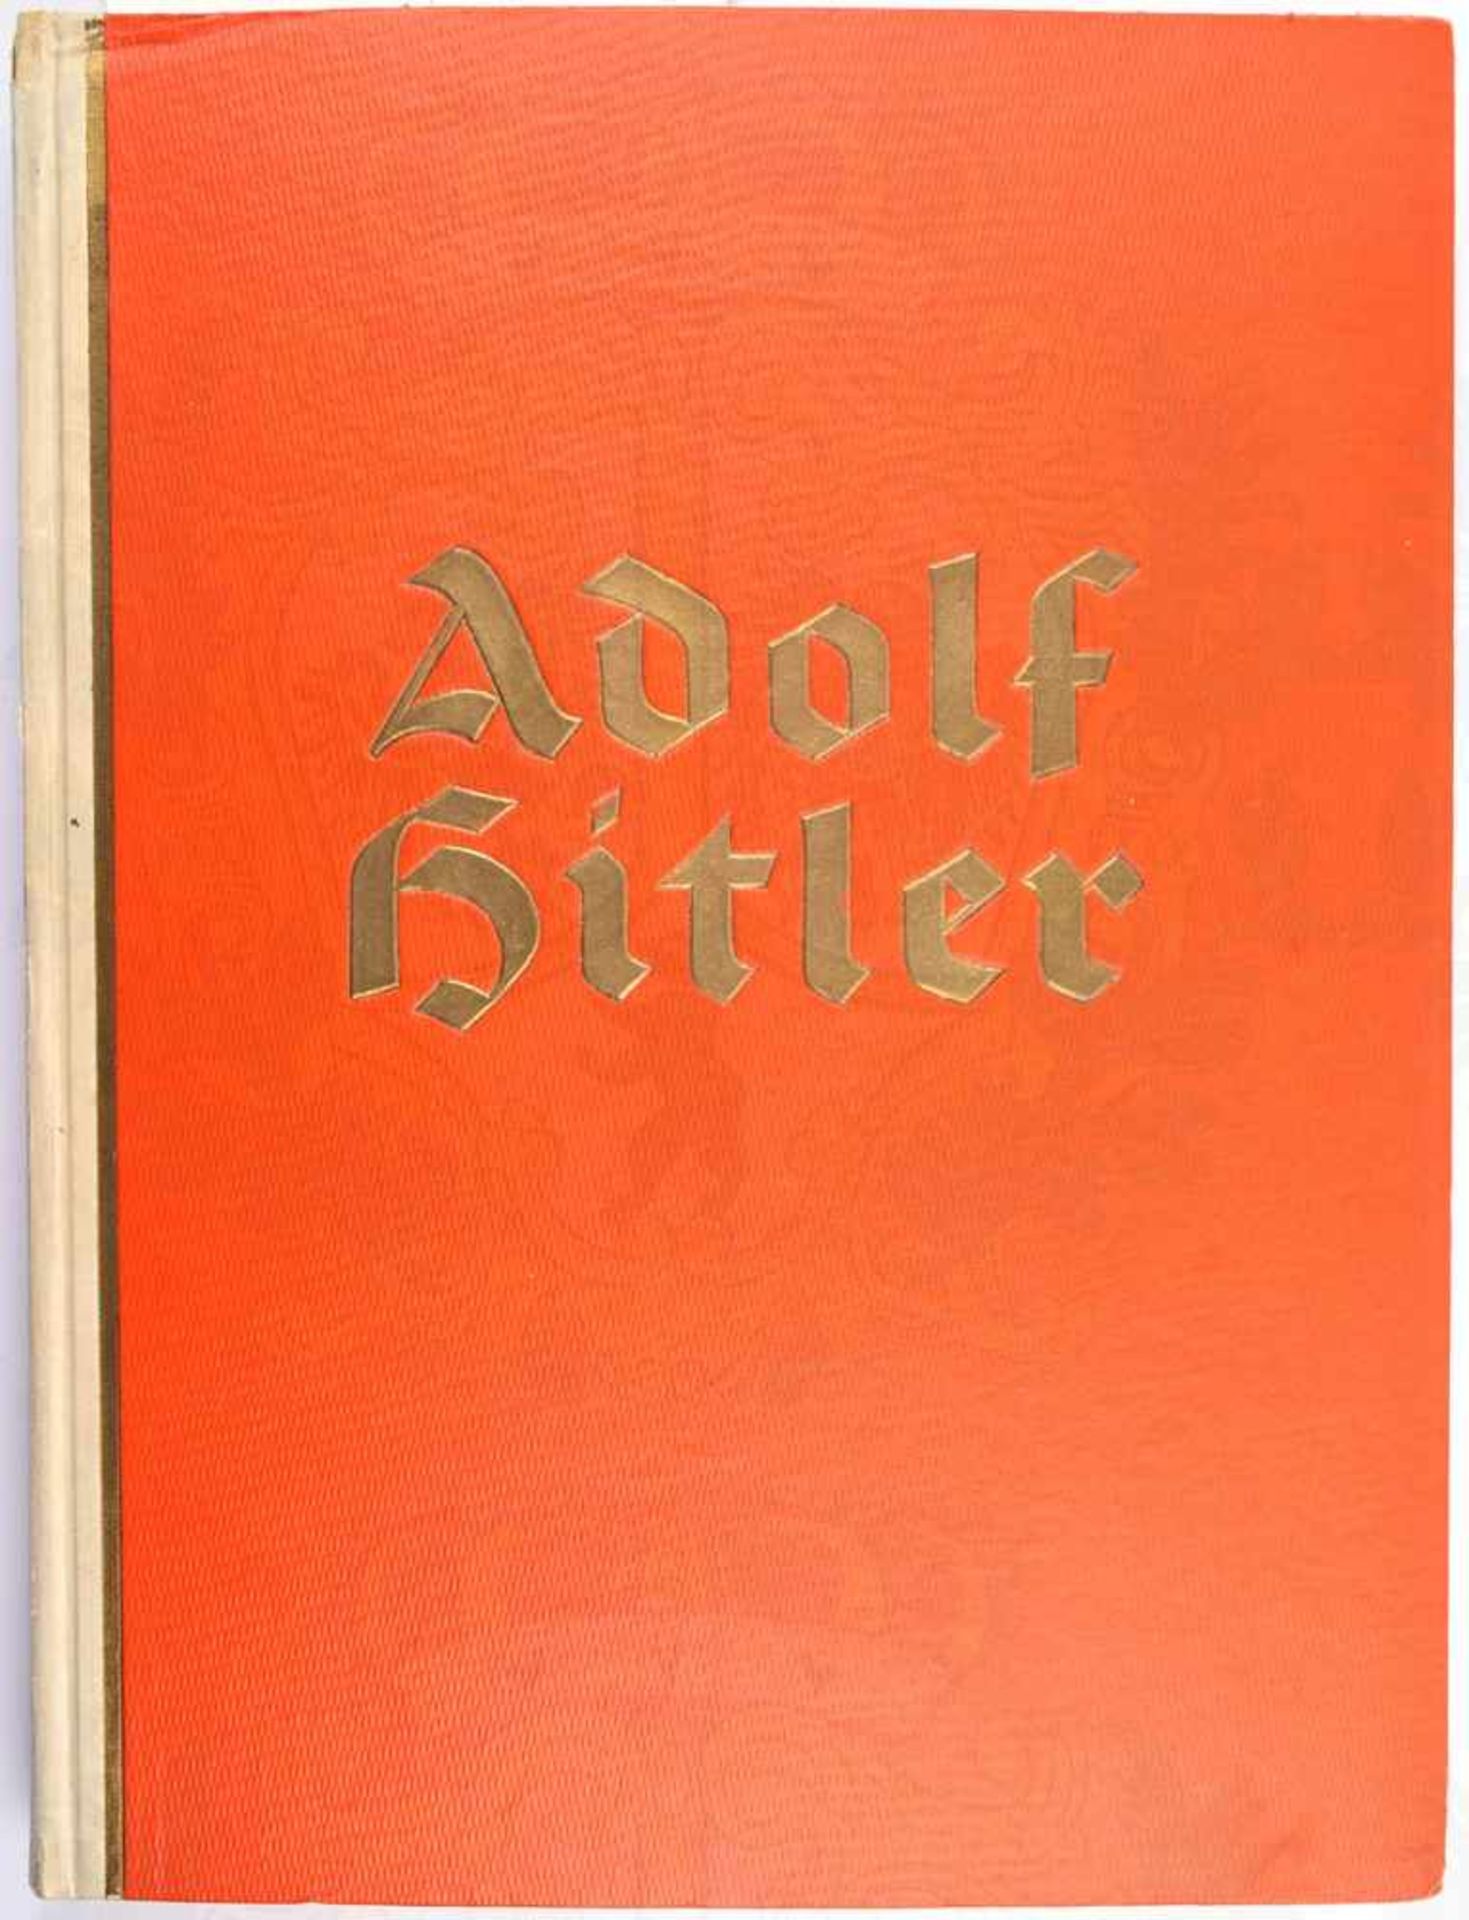 ADOLF HITLER - BILDER AUS DEM LEBEN DES FÜHRES, Reemtsma, Hamburg 1936, kpl., 200 Abb., goldgepr.